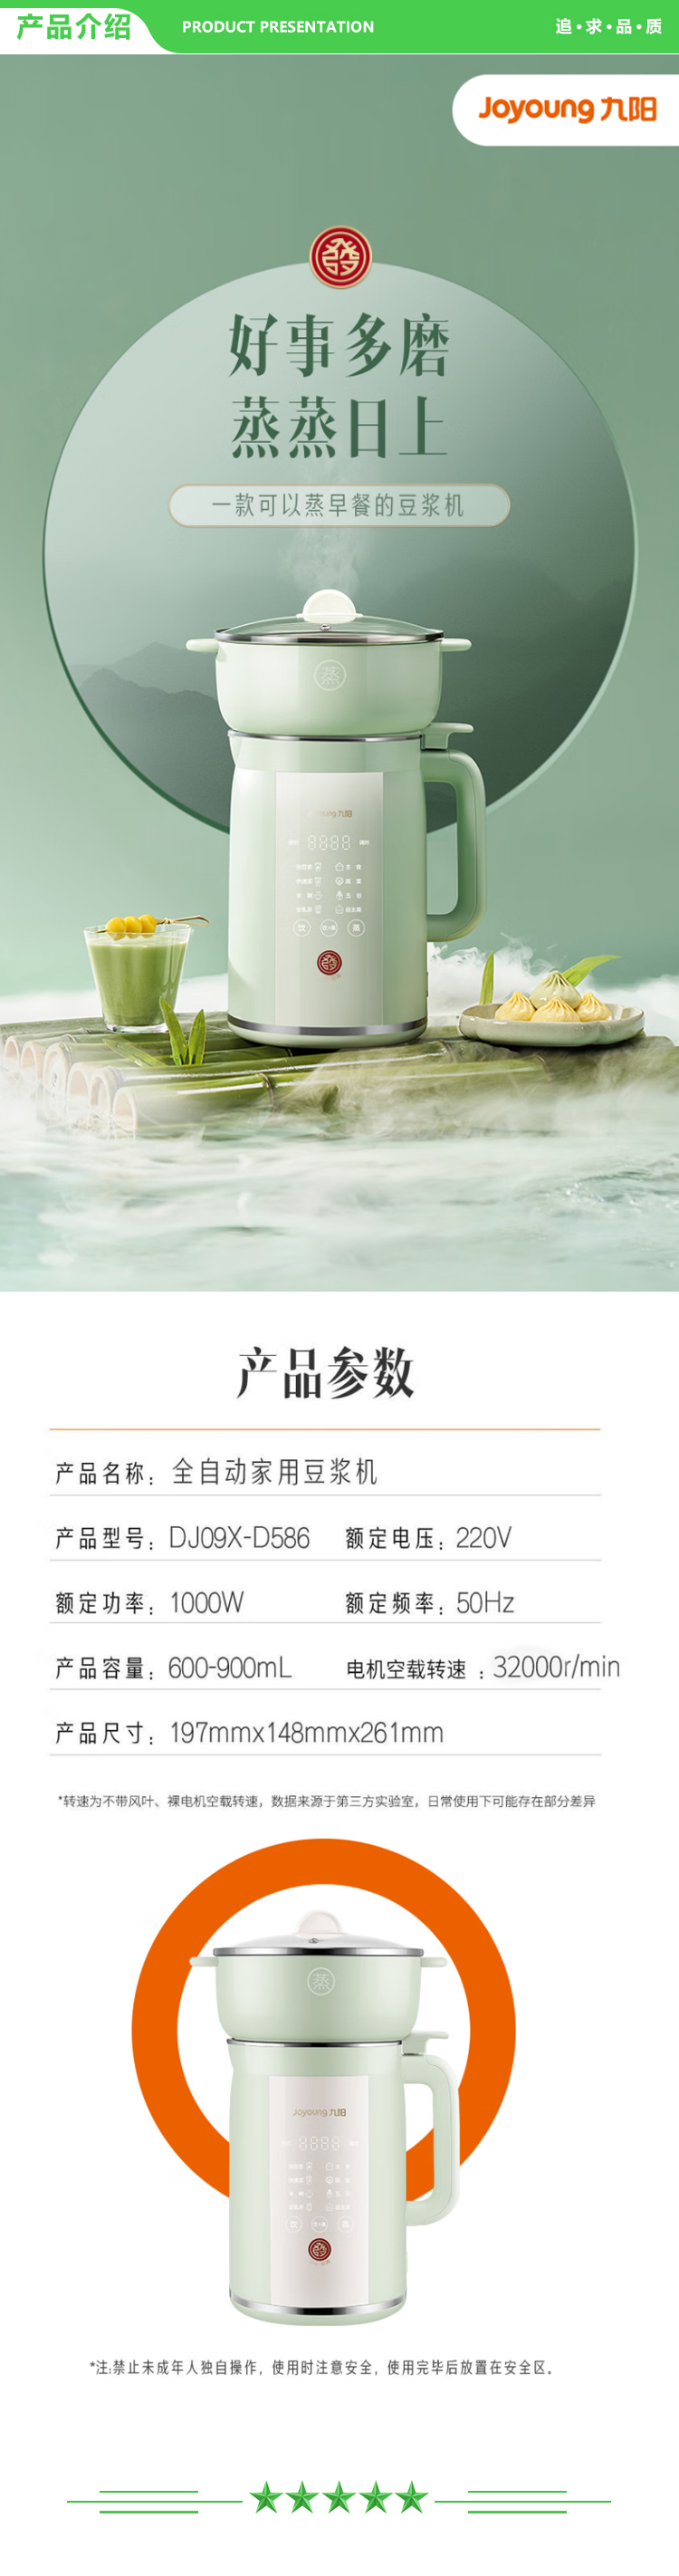 九阳 Joyoung DJ09X-D586 豆浆机 0.9L家庭容量 上蒸下煮 破壁免滤 预约时间 多功能榨汁机料理机.jpg